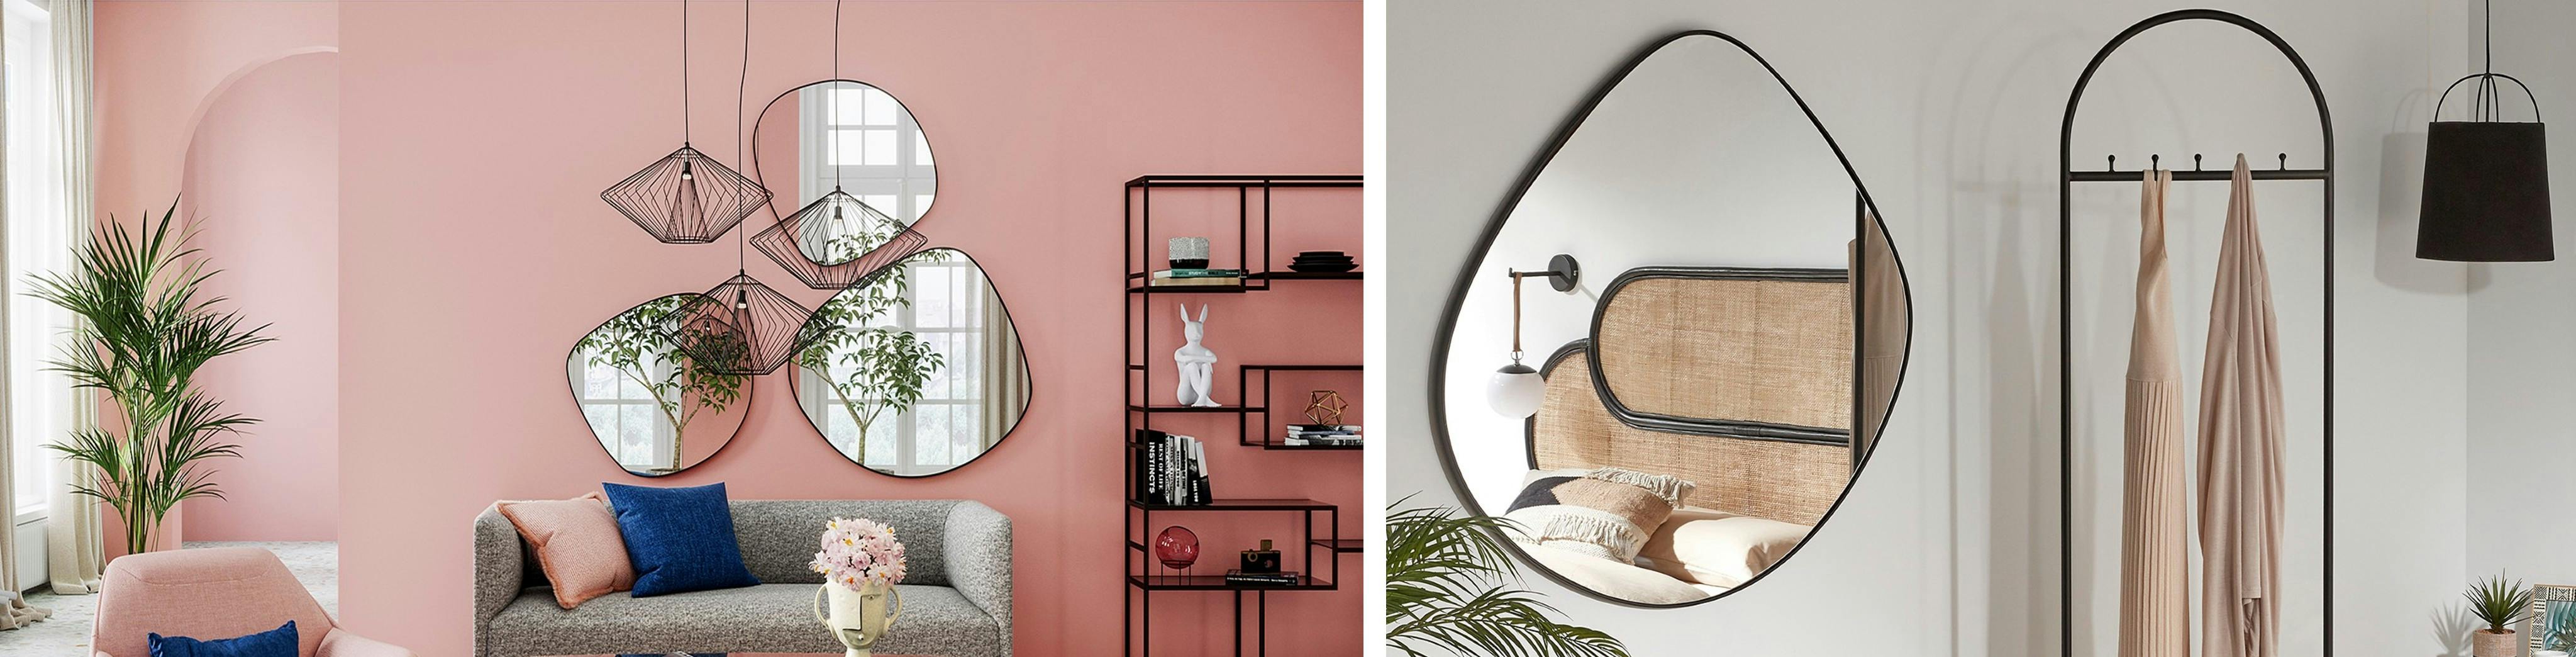 Organische, asymmetrische wandspiegels tegen een roze woonkamerwand en in een slaapkamer in natuurtinten.